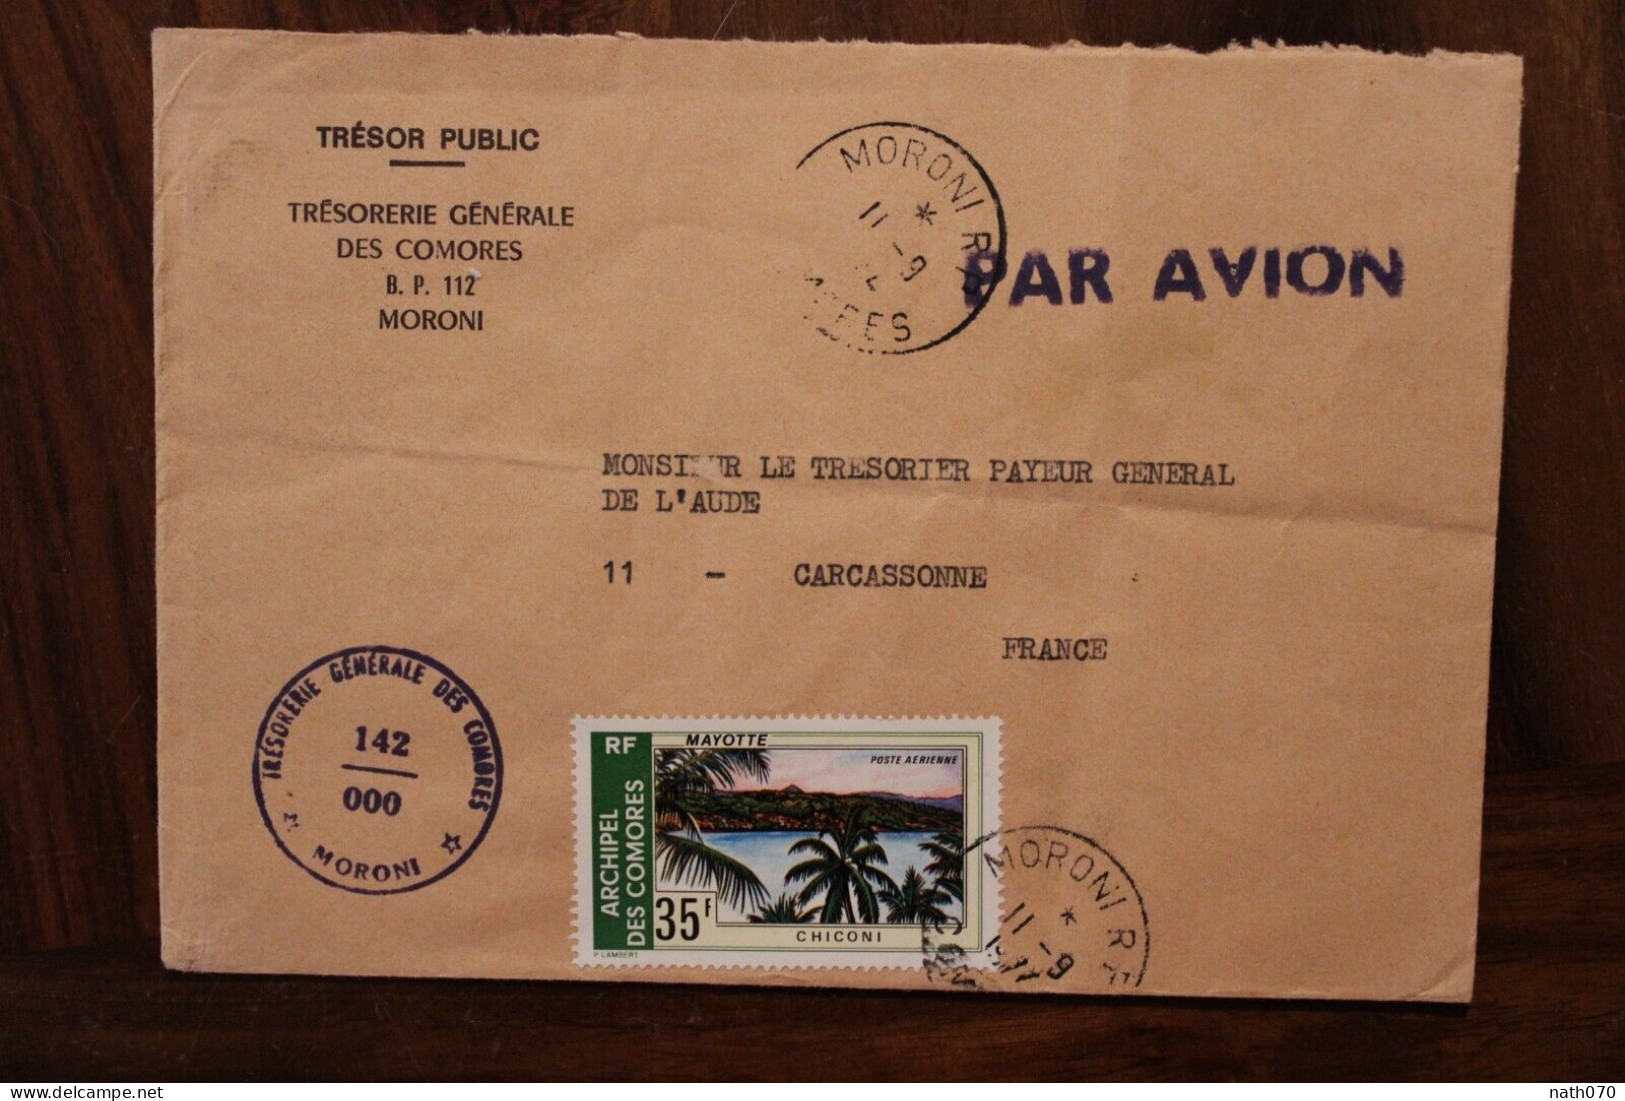 1977 Comores Trésorerie Générale Pour France Carcassonne Cover Air Mail Poste Aerienne Par Avion Timbre Mayotte - Komoren (1975-...)